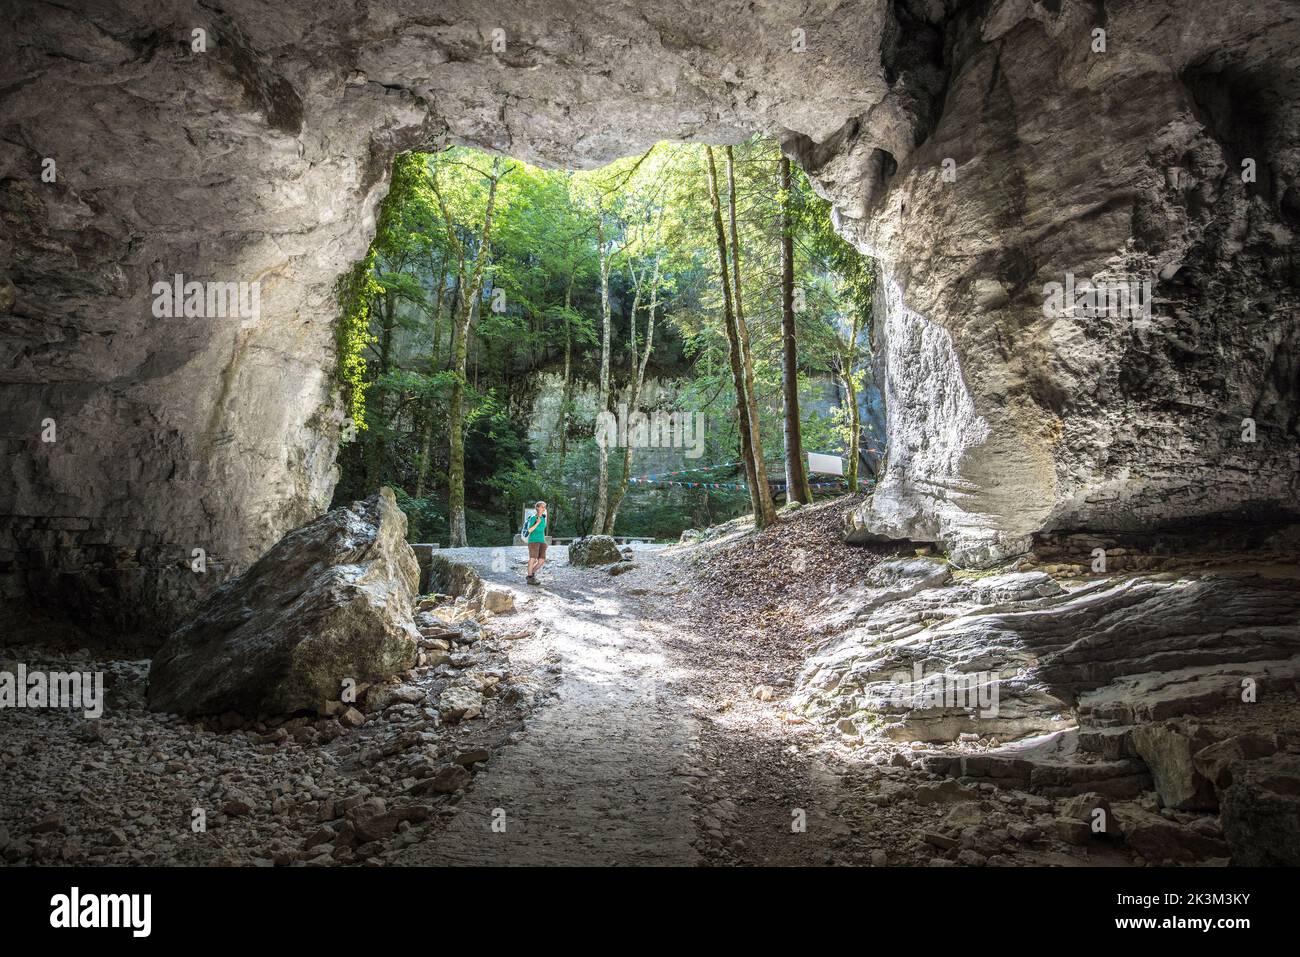 Entrance, Grottes de Saint-Christophe, Saint-Christophe la Grotte, Savoie, France Stock Photo